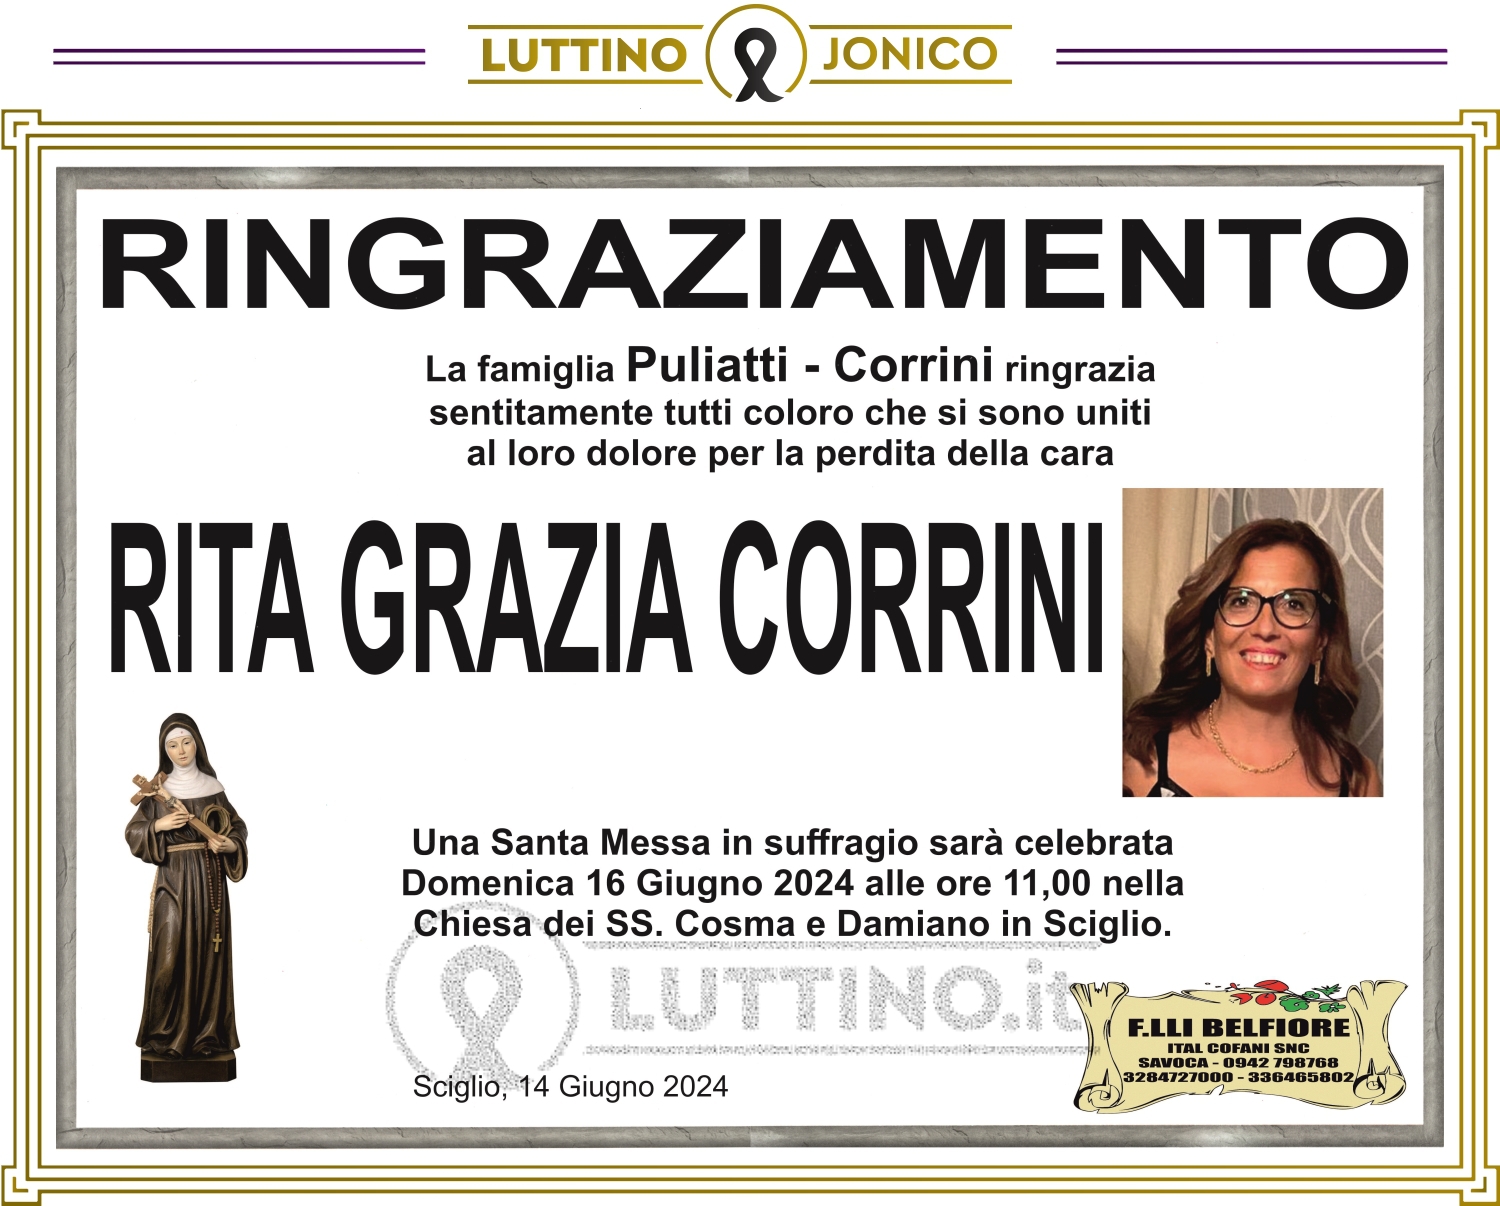 Rita Grazia Corrini